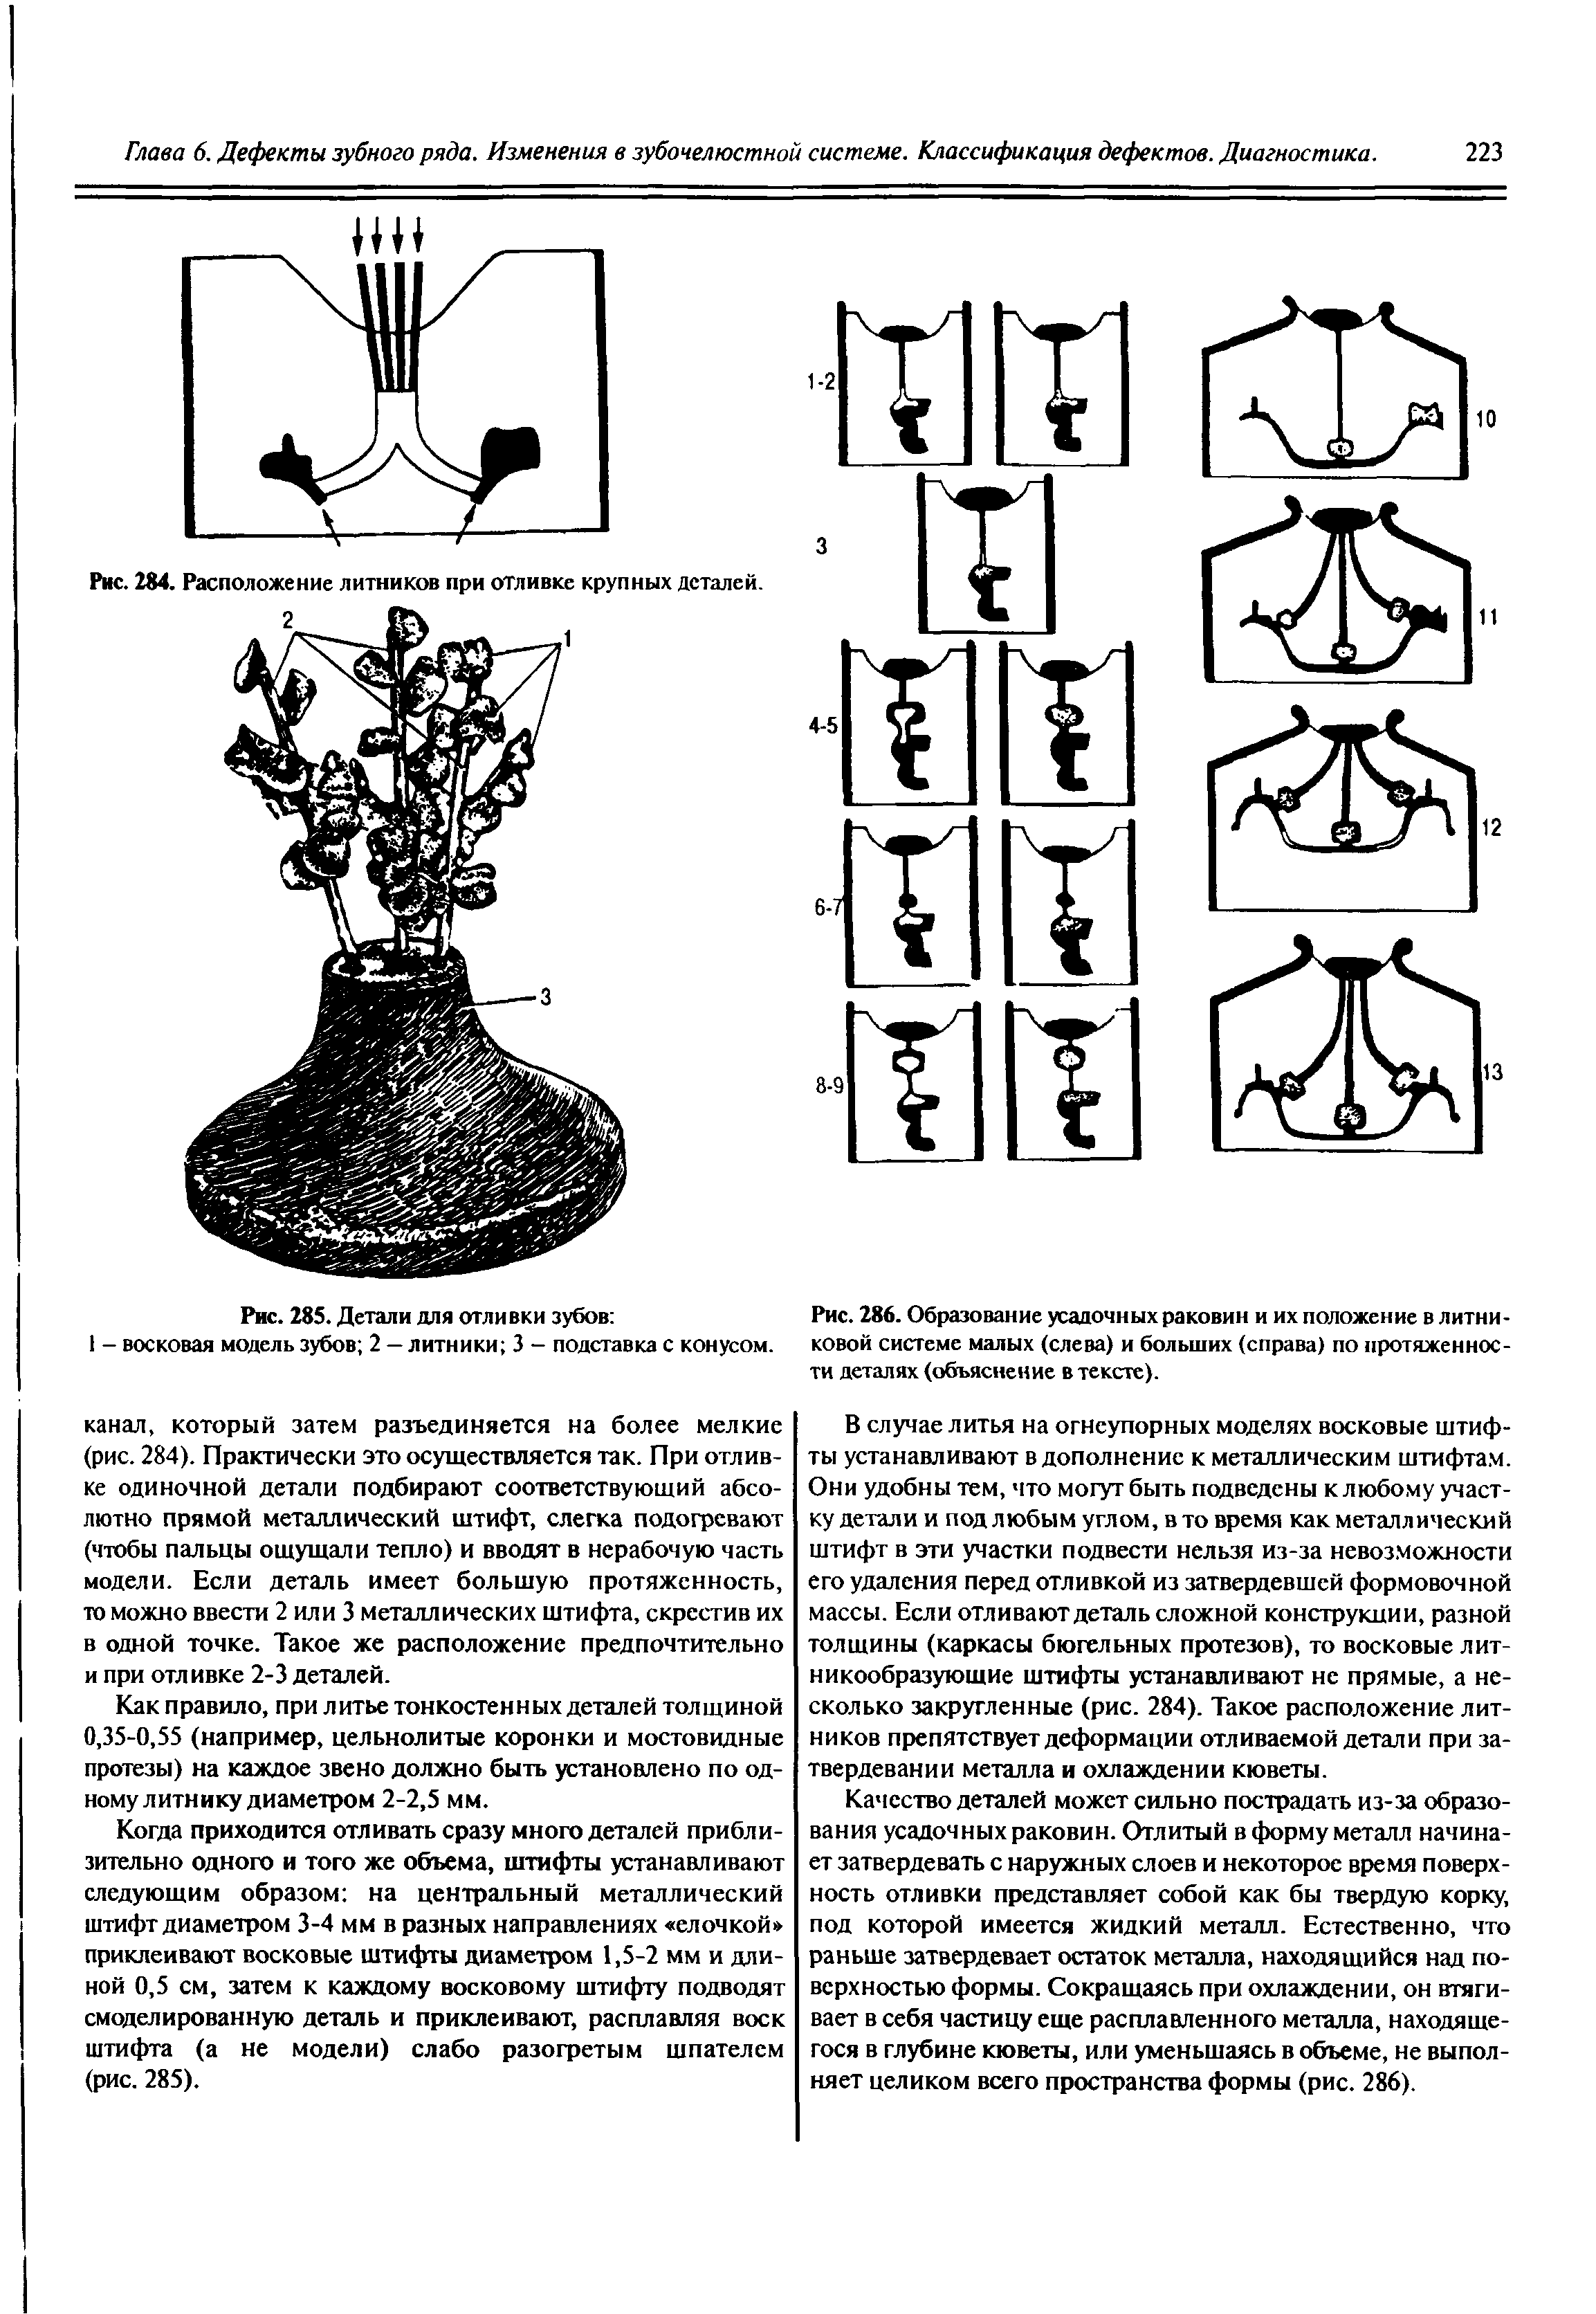 Рис. 286. Образование усадочных раковин и их положение в литниковой системе малых (слева) и больших (справа) по протяженности деталях (объяснение в тексте).